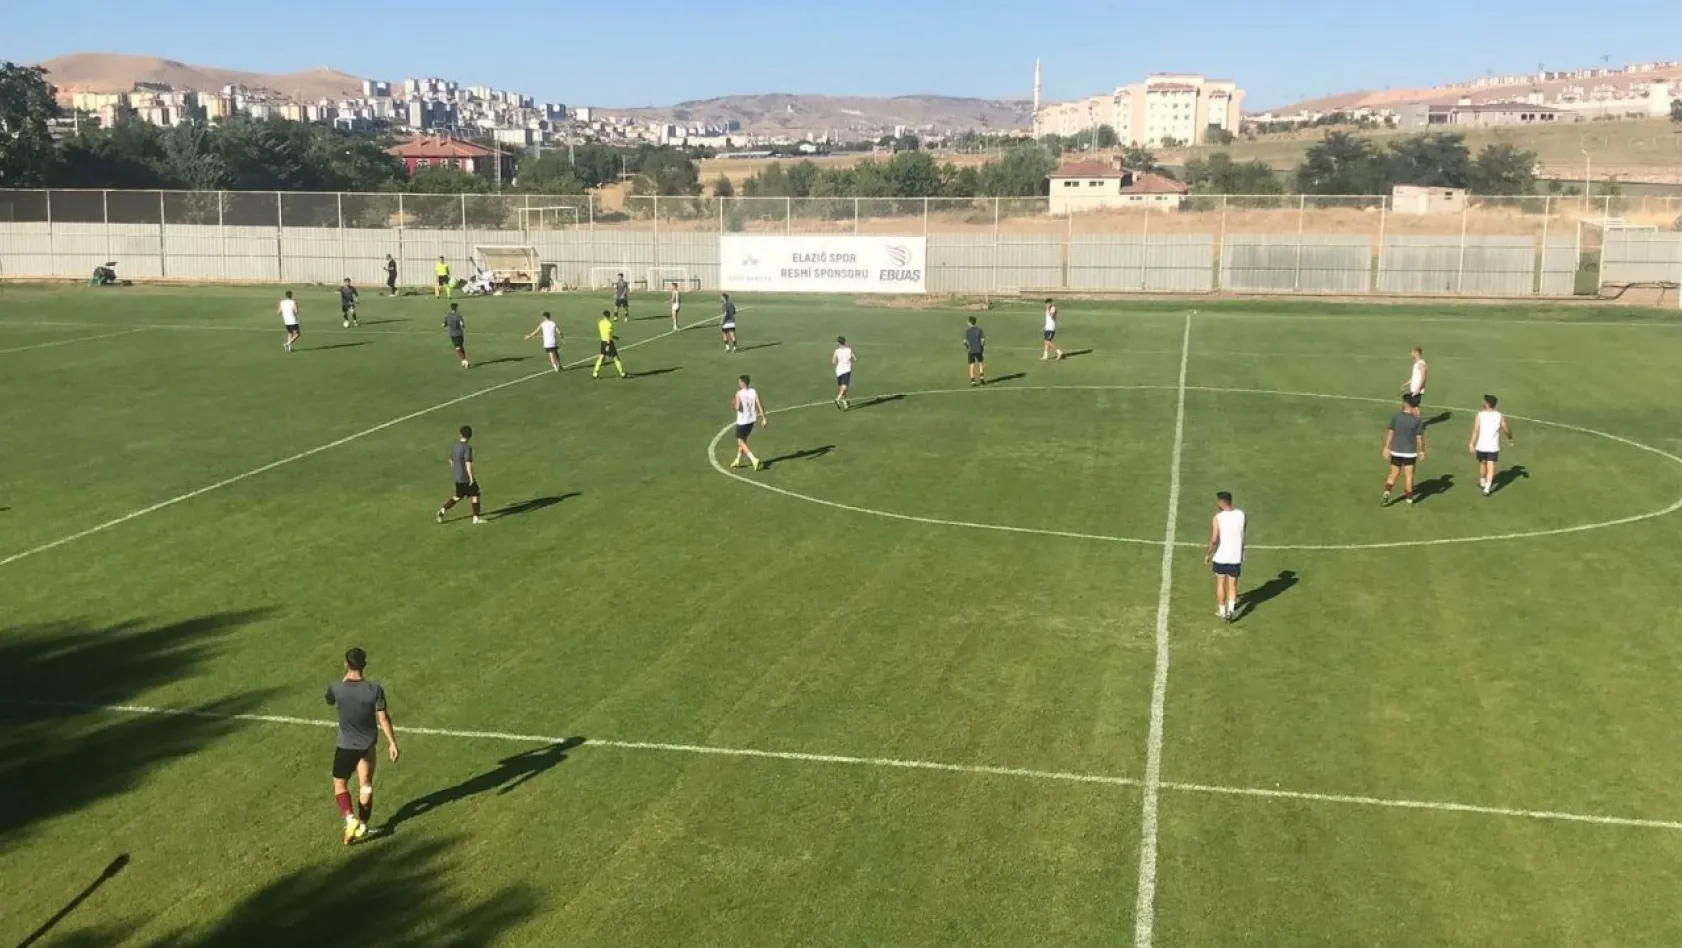 Elazığspor 2 - 0 Aksaray Gençlikspor